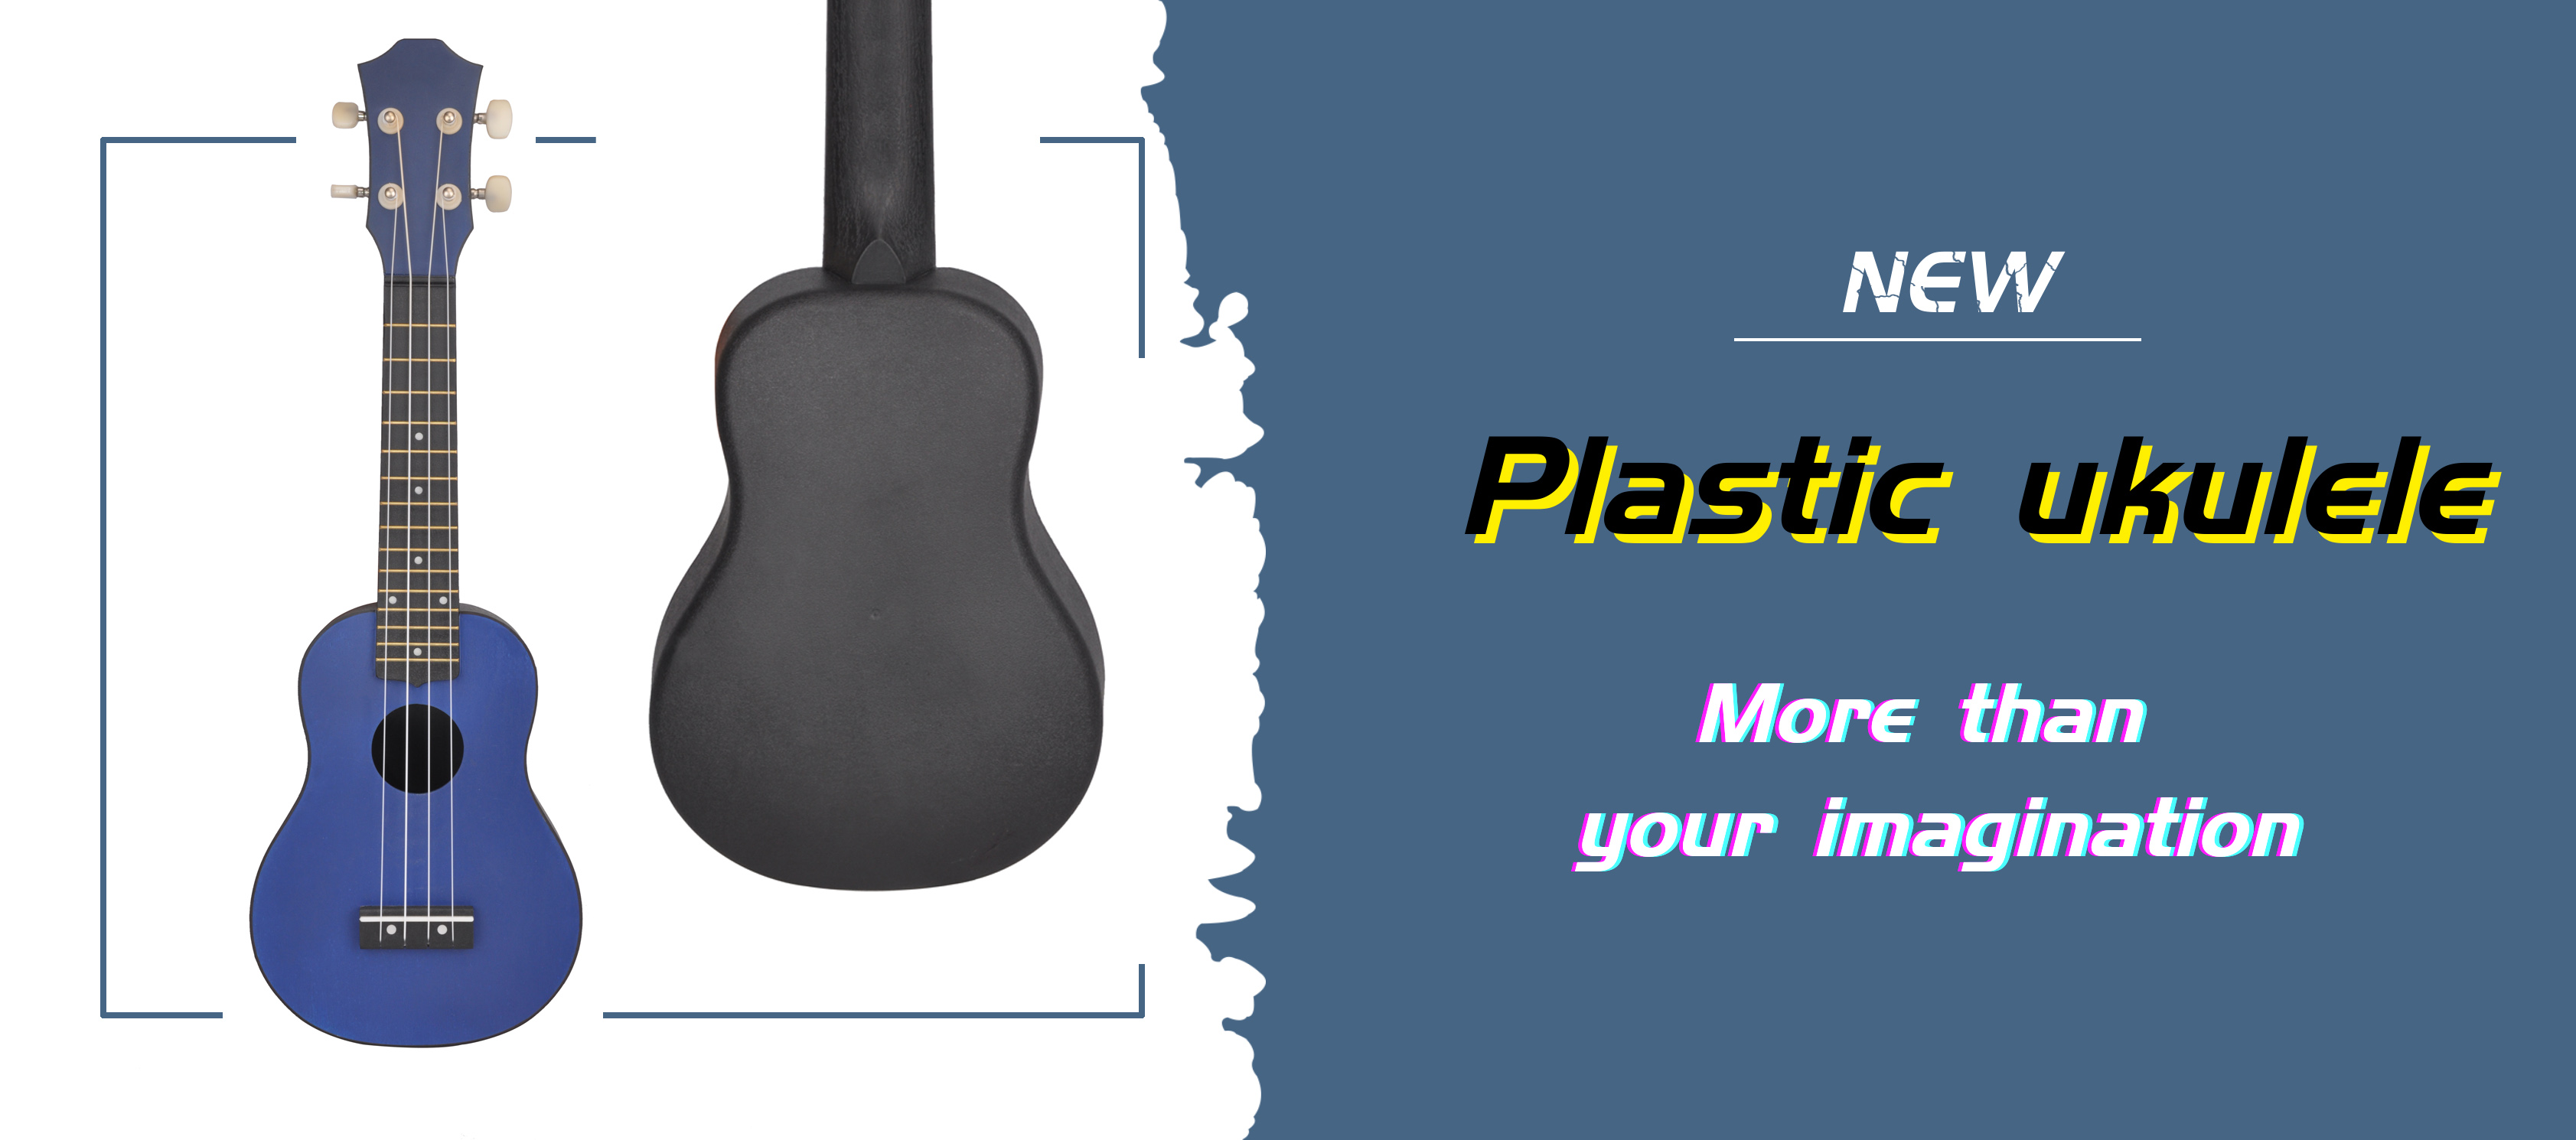 Plastic ukulele